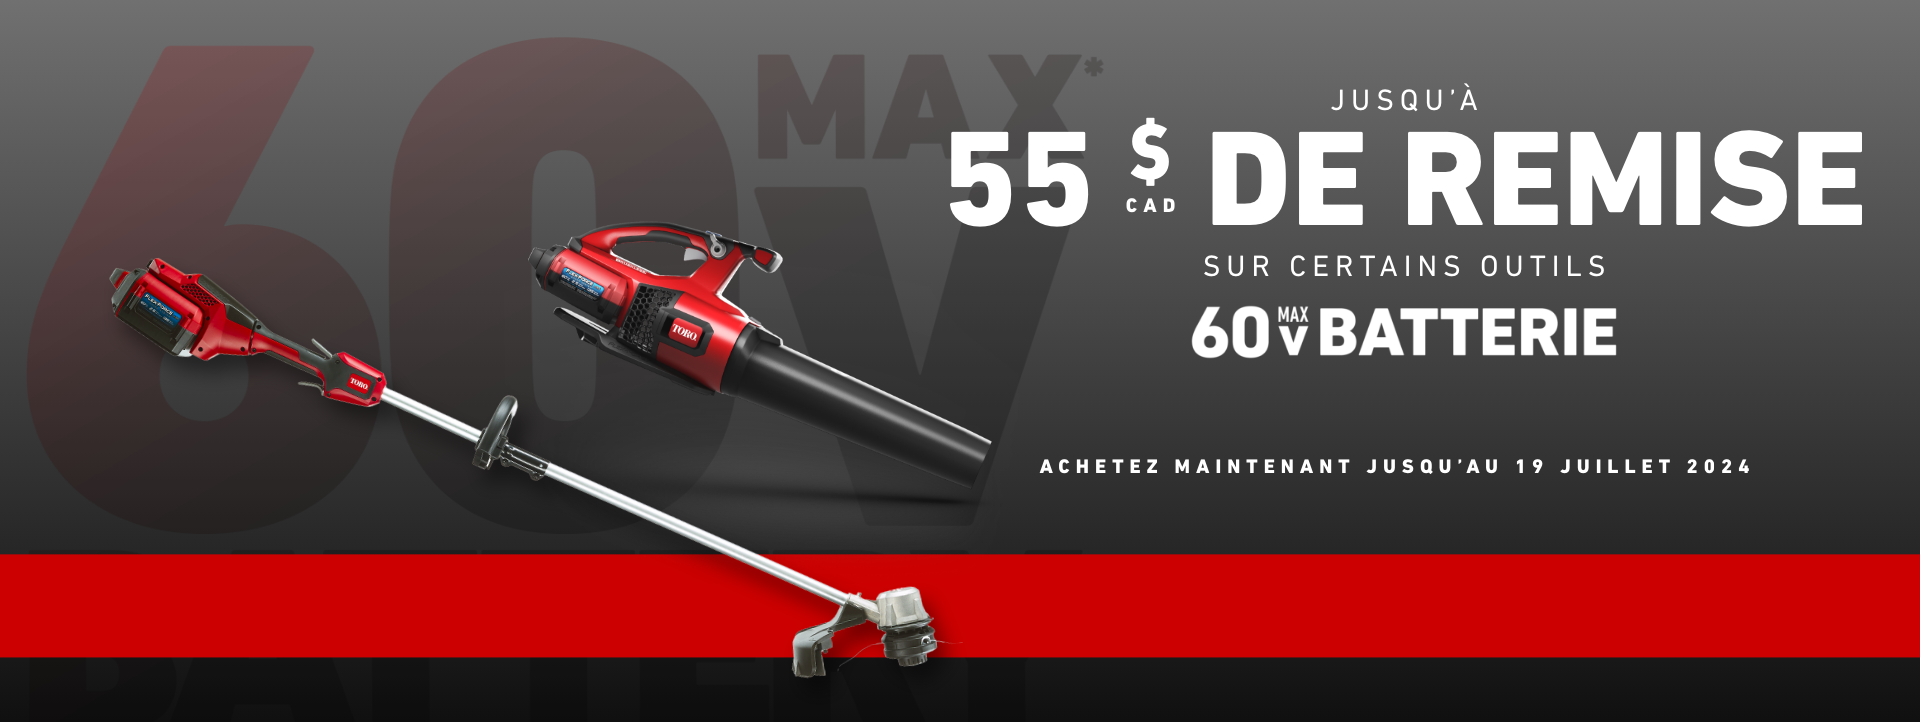 Économisez 55 $ sur certains outils de parc à batterie 60 V Max - achetez maintenant jusqu'au 19 juillet 2024